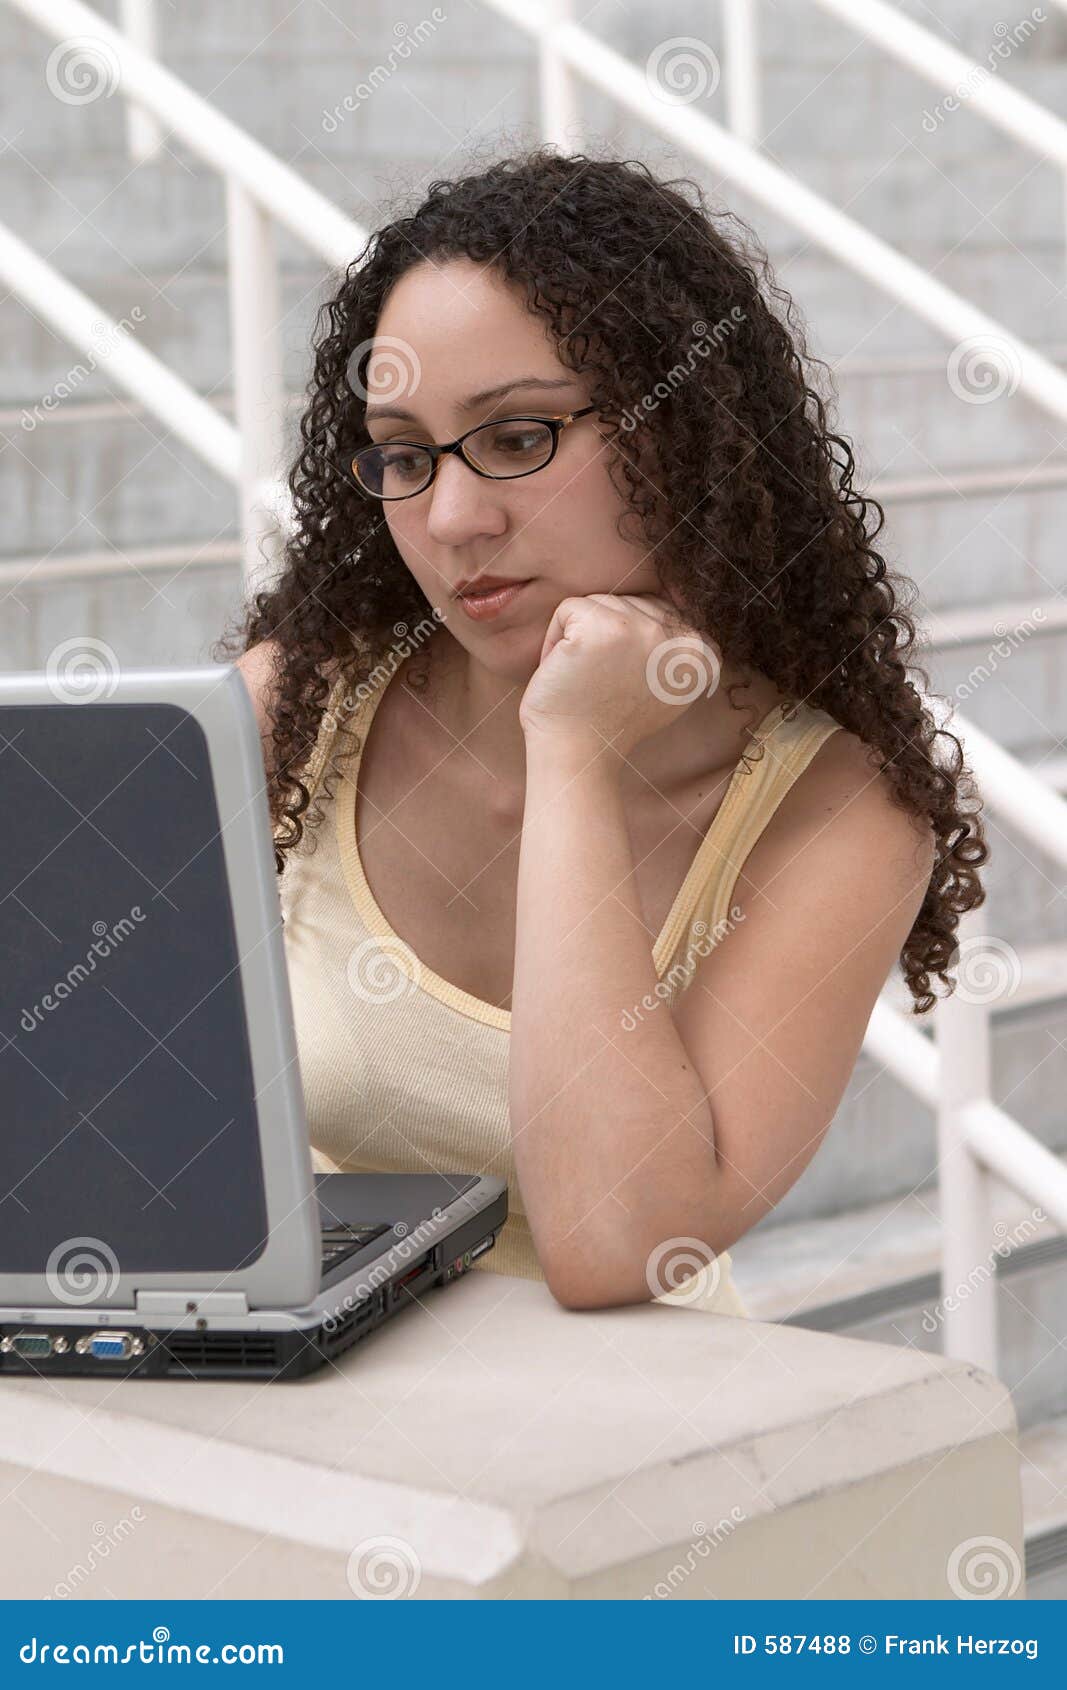 Latina Student At Computer Wearin